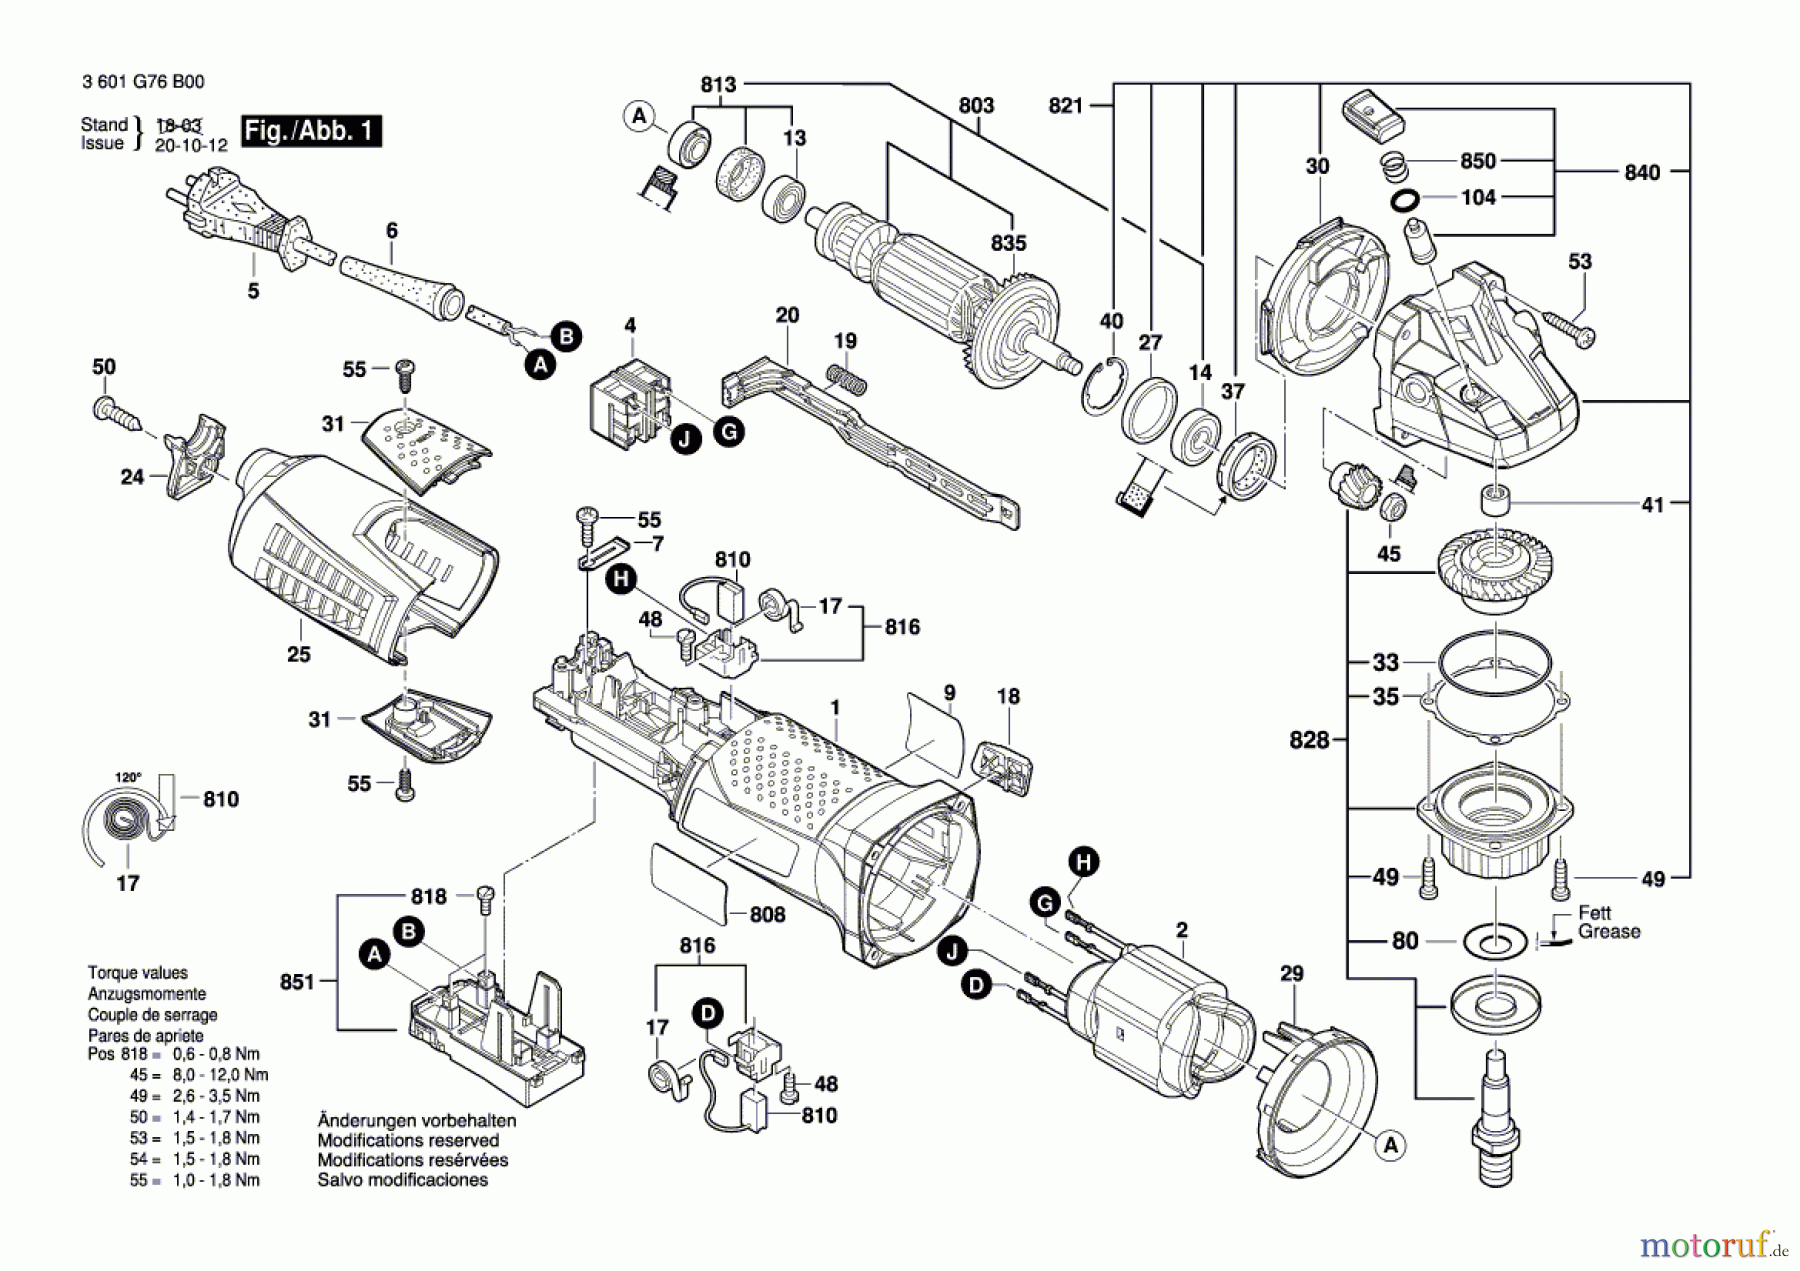  Bosch Werkzeug Betonschleifer BAG 125 Seite 1